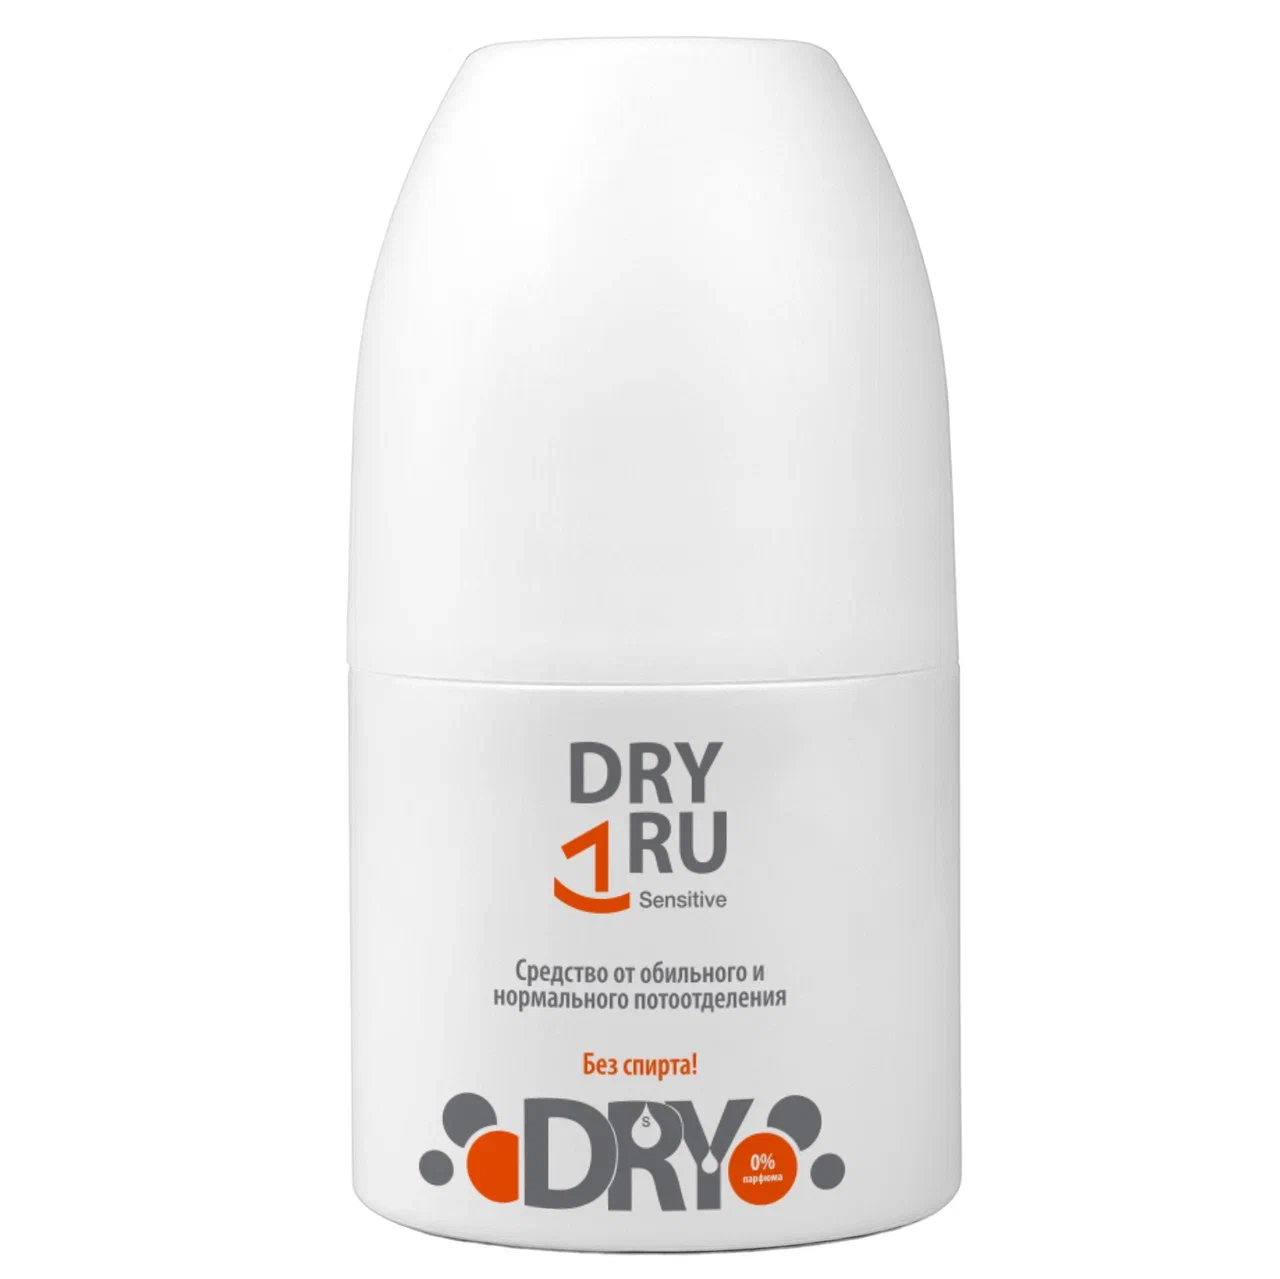 Дезодорант-антиперспирант DRY RU Sensitive шариковый, от пота и запаха 50 мл дезодорант алунит sahra кристалл стик от запаха и пота 60 г